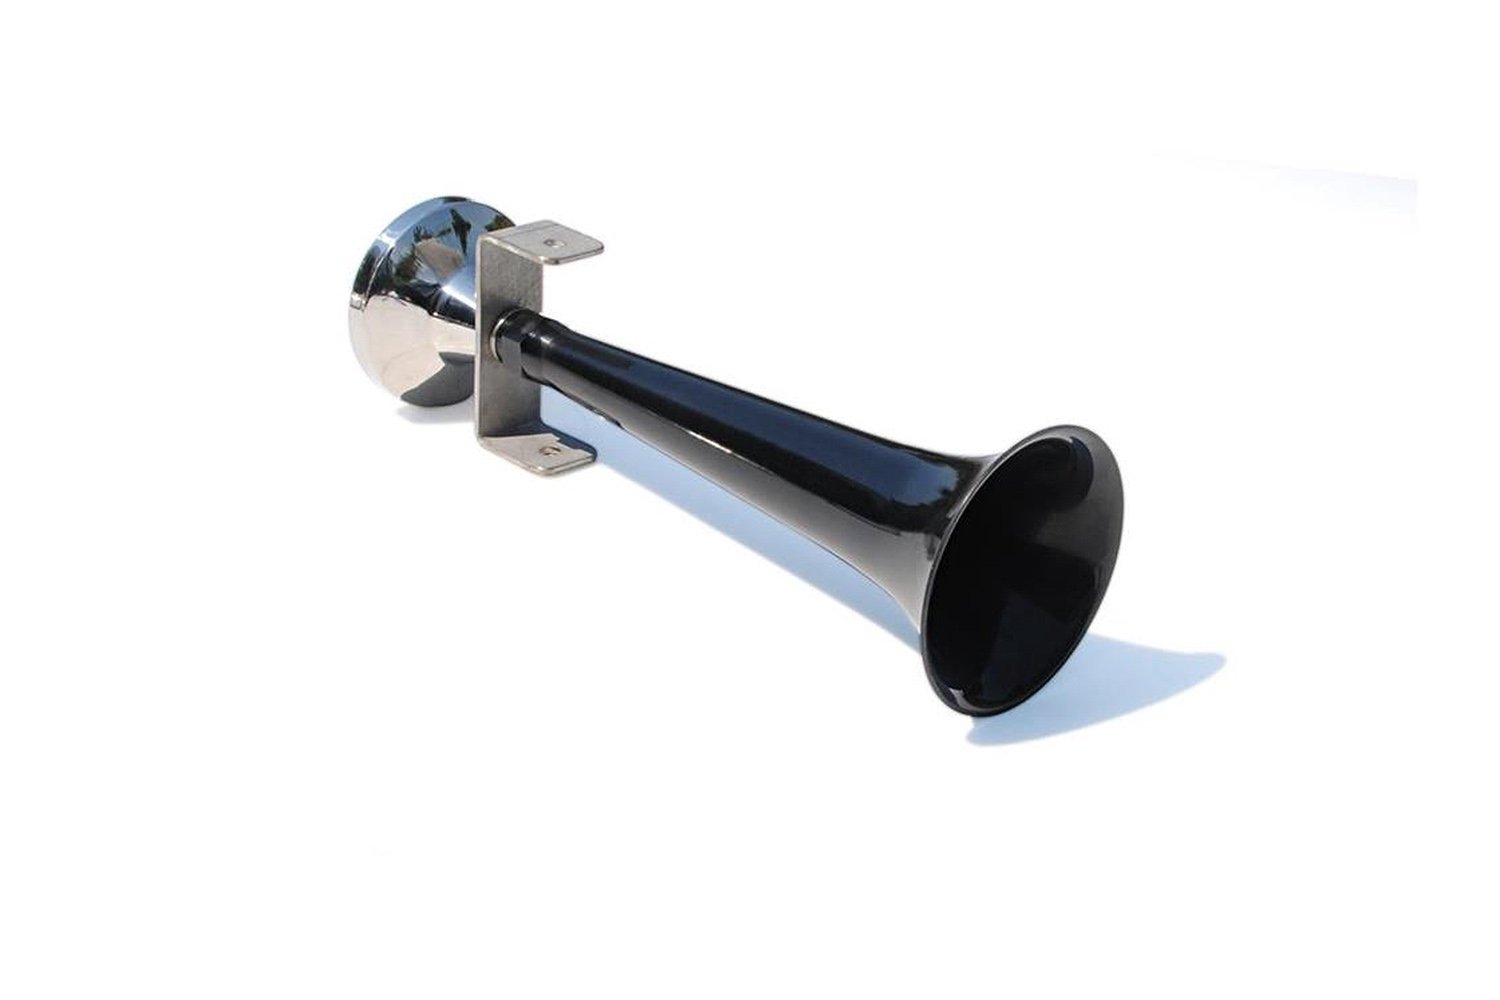 Lkw Druckluft Horn mit Schutzkappe, Edelstahl oder Kunstoffgehäuse